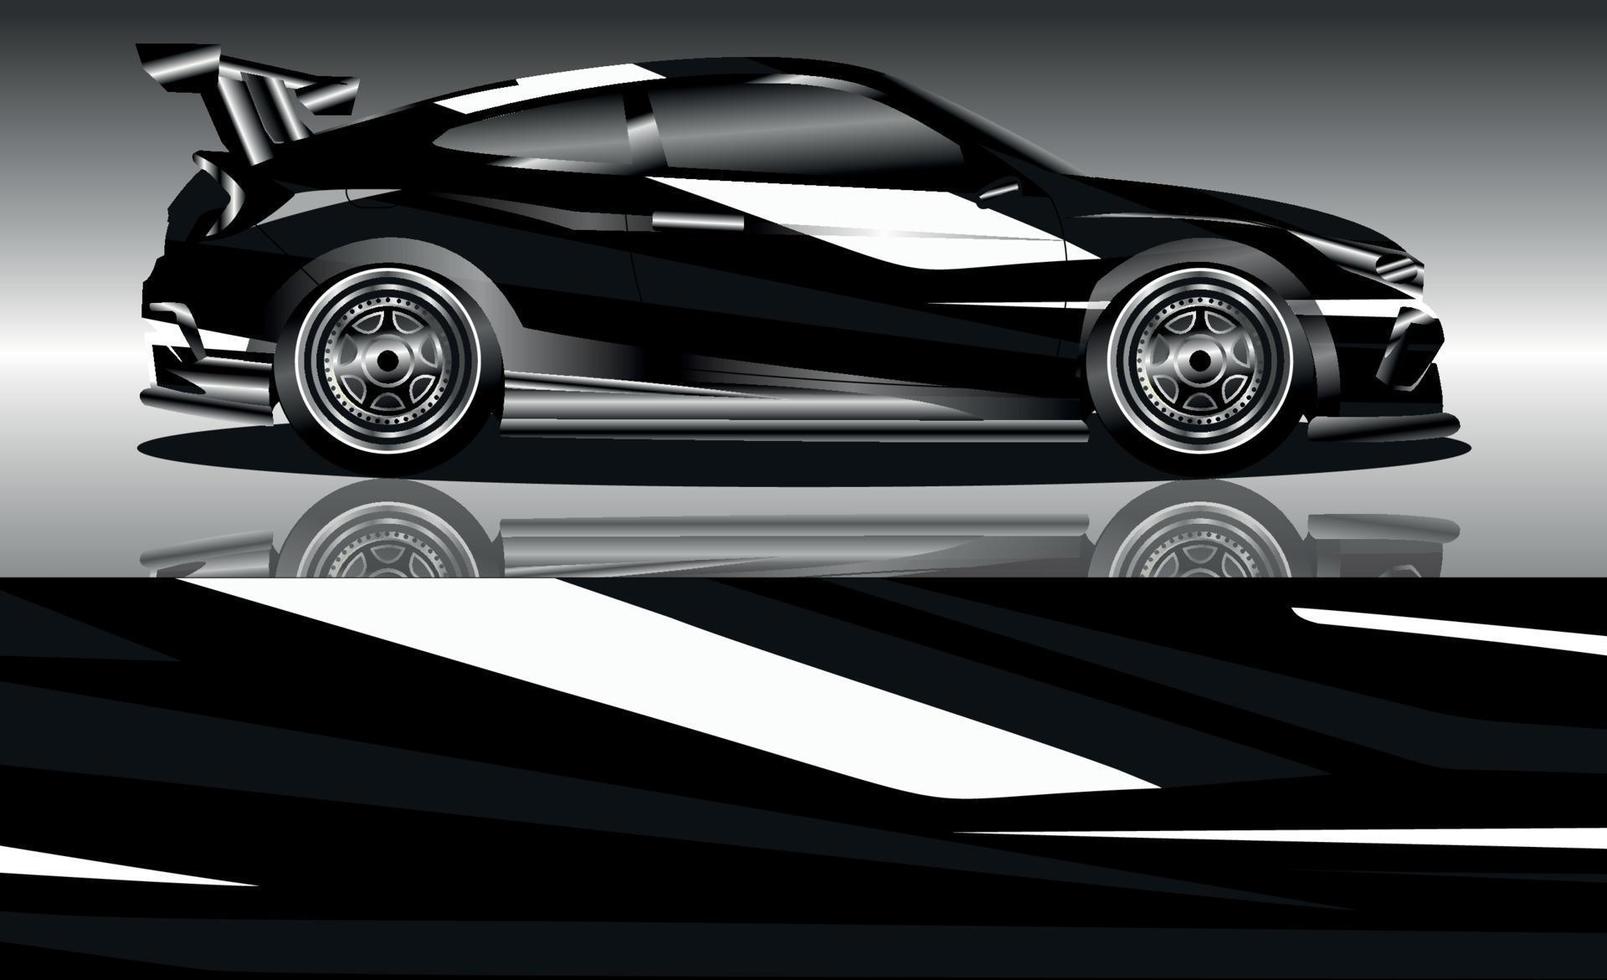 sports car wrap design vector